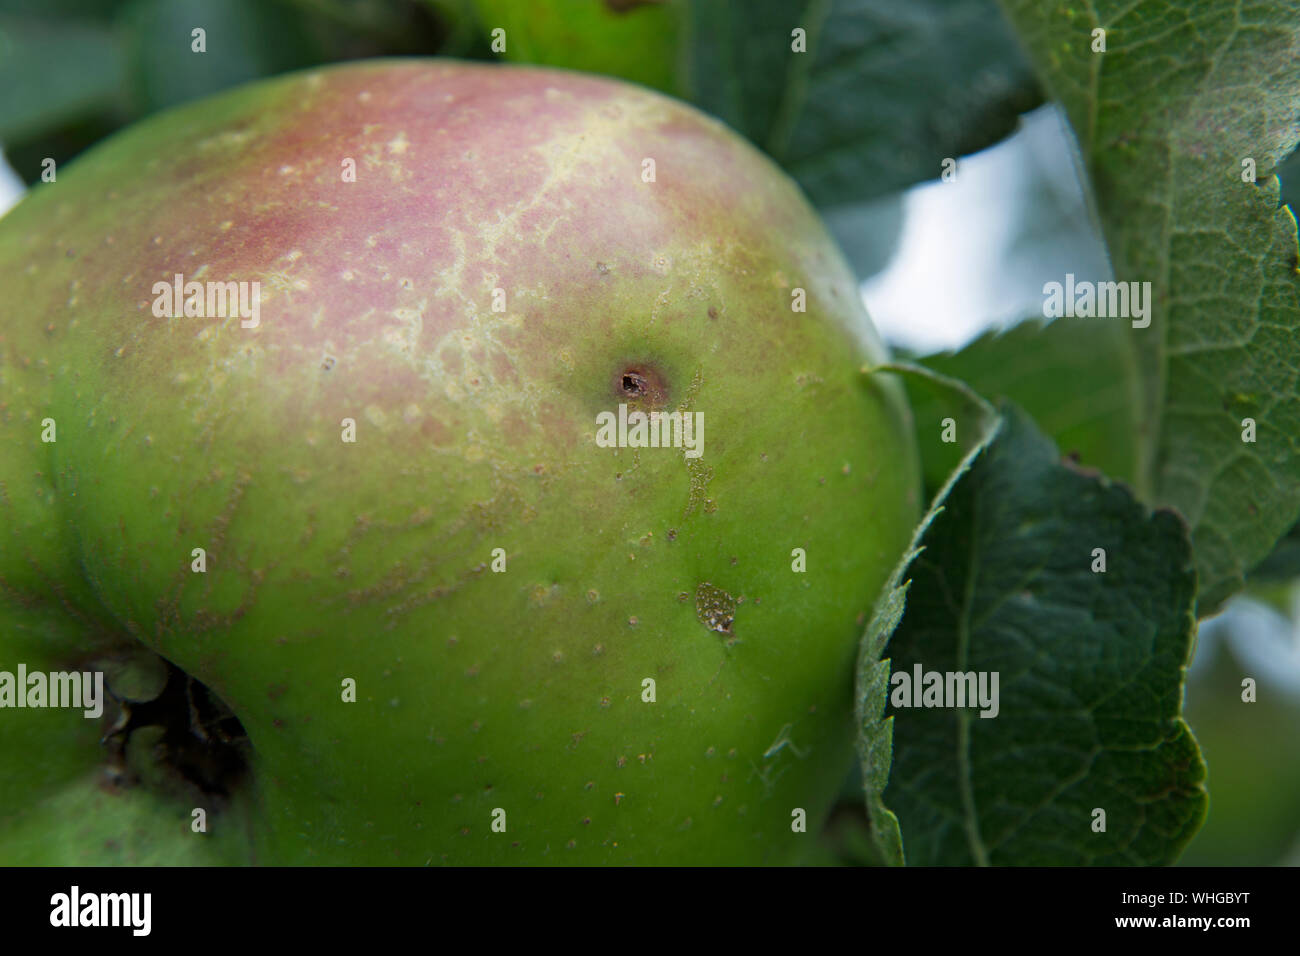 Macchie apple shot close up in formato orizzontale Foto Stock